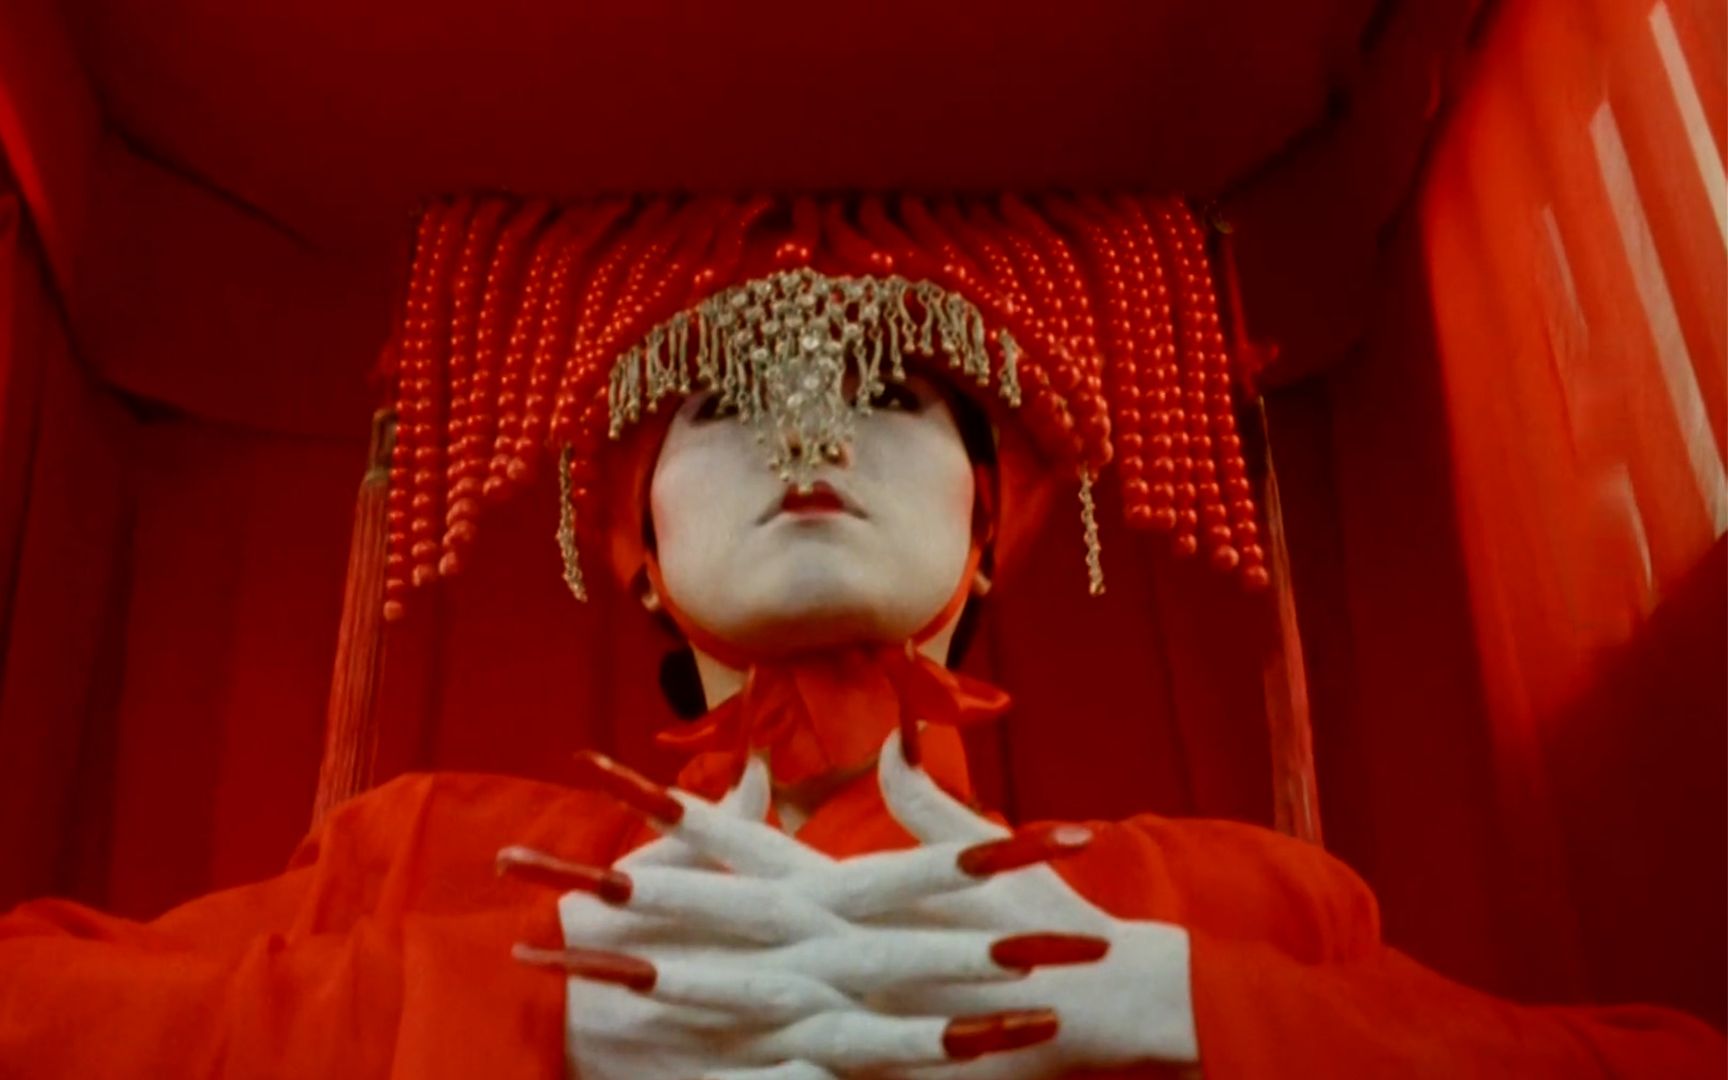 林正英最恐怖的电影,红白双煞被誉为华语鬼片最经典一幕!